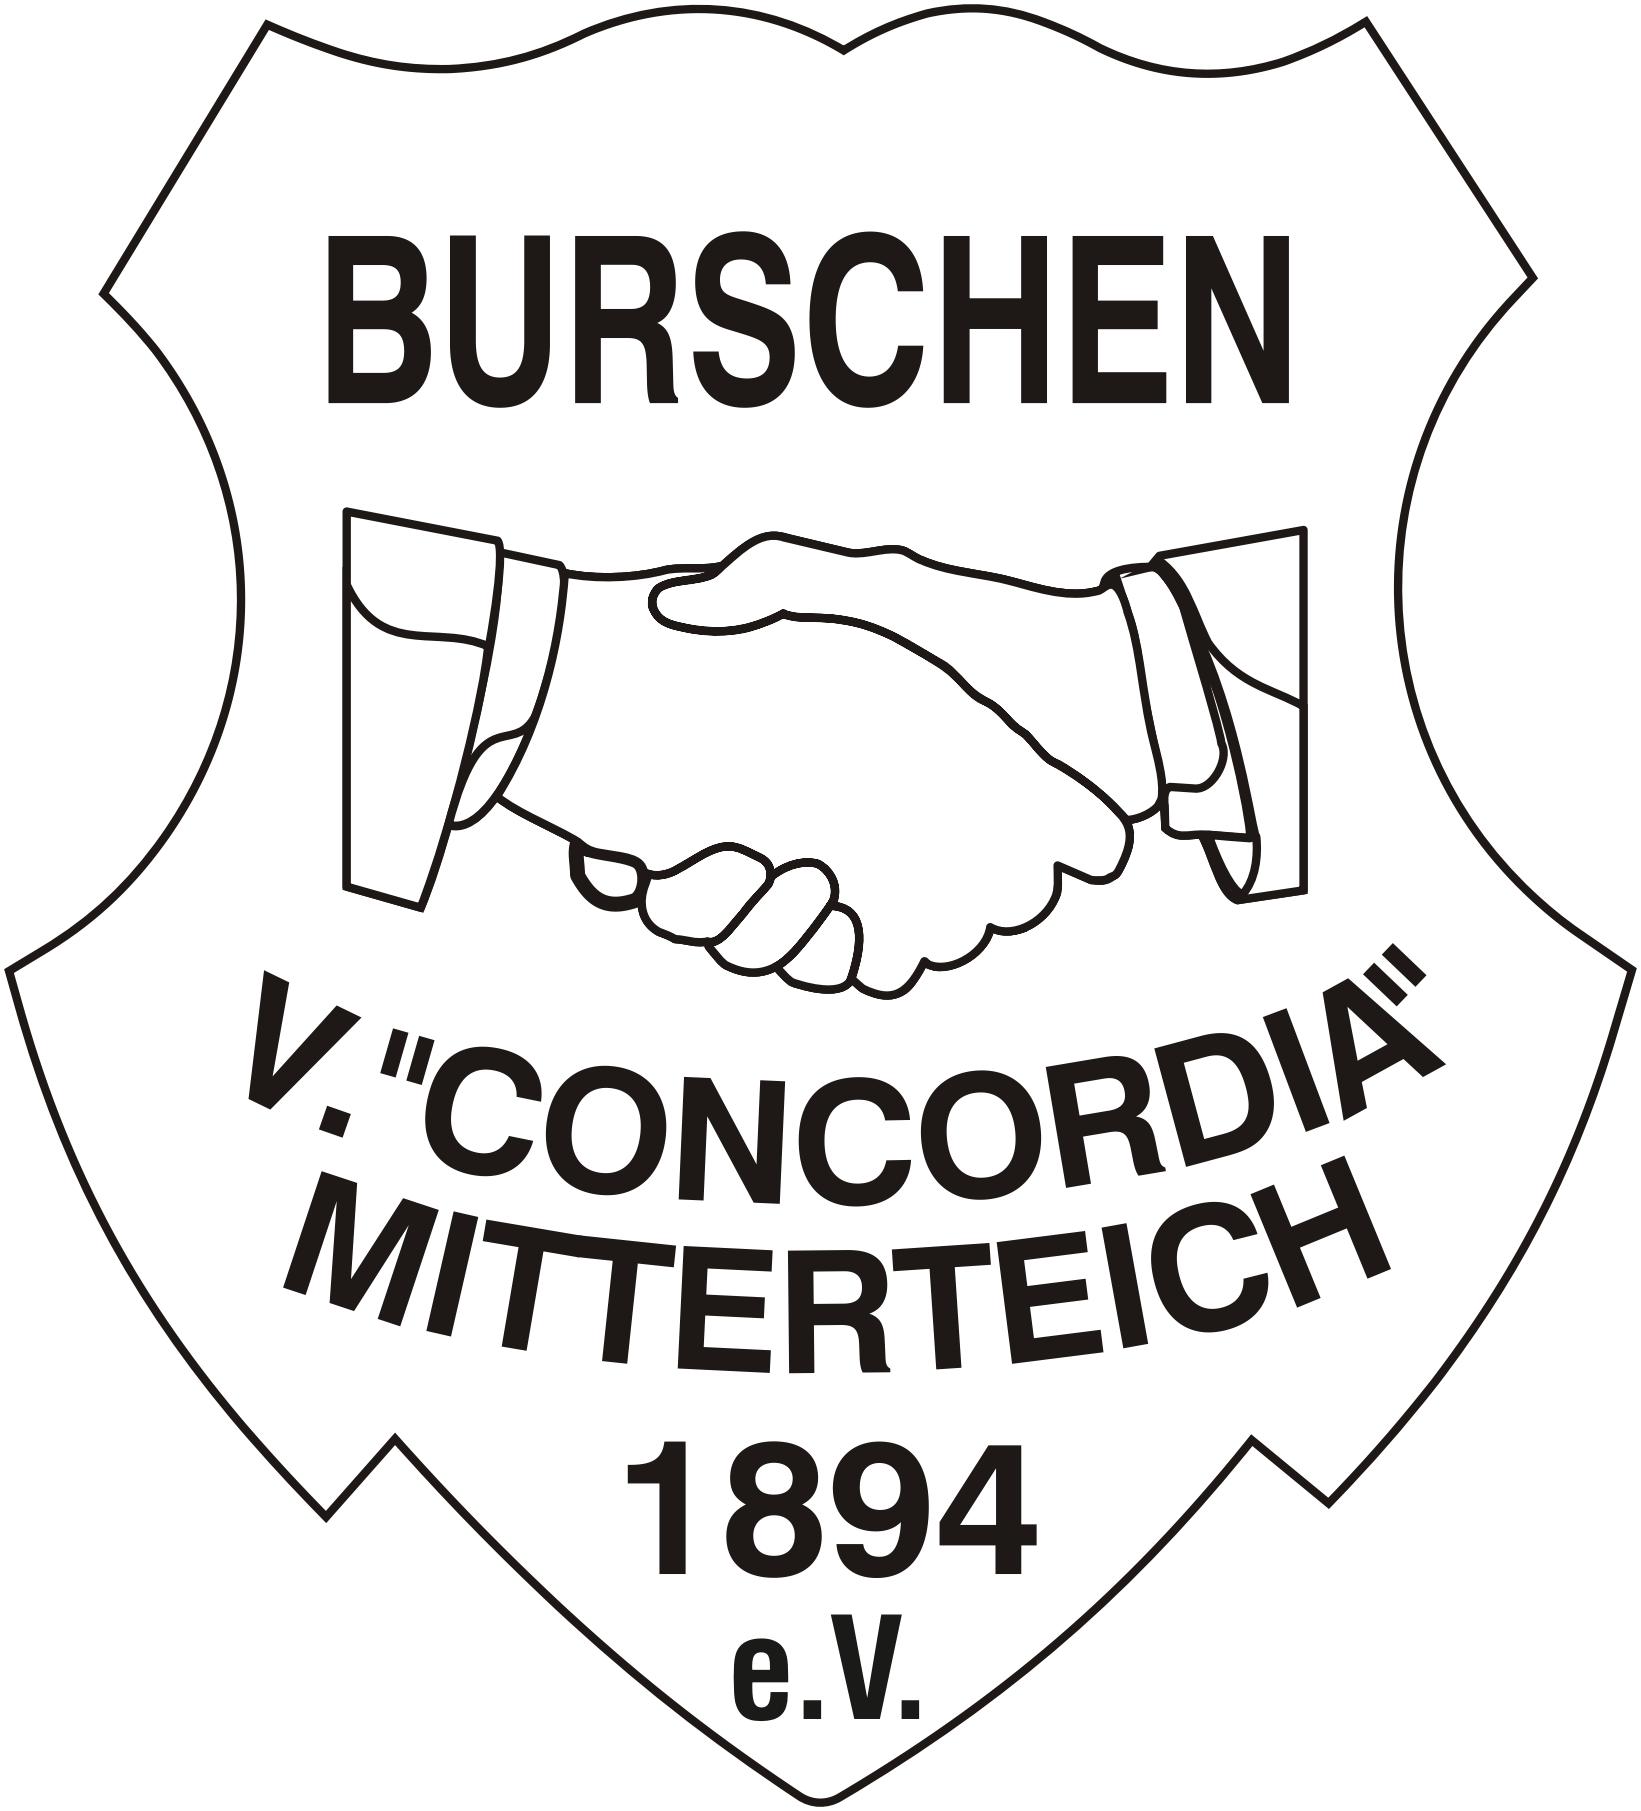 Burschenverein Mitterteich e.V.